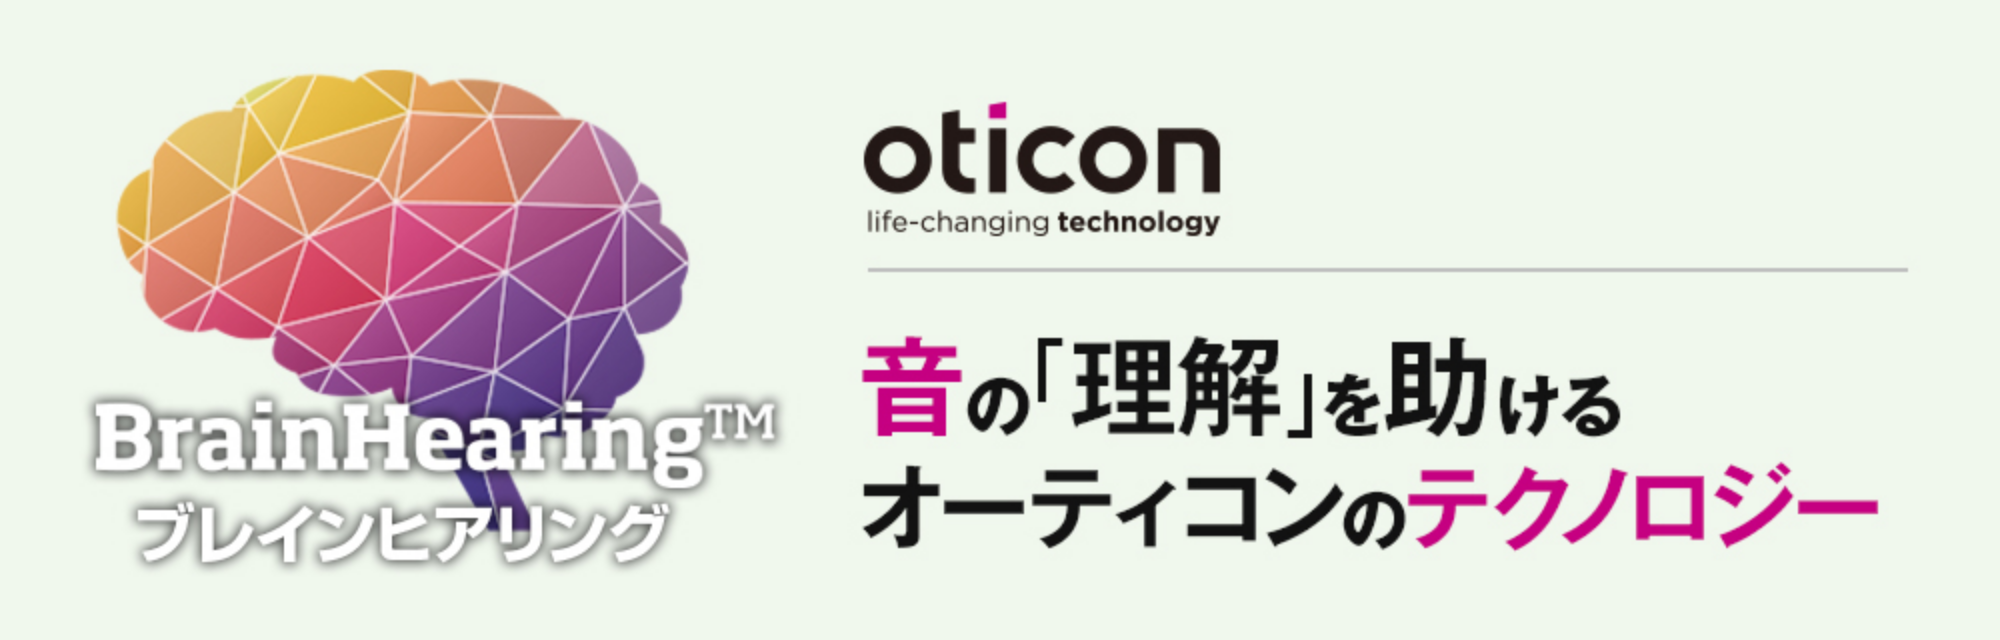 oticon｜音の「理解」を助けるオーティコンのテクノロジー